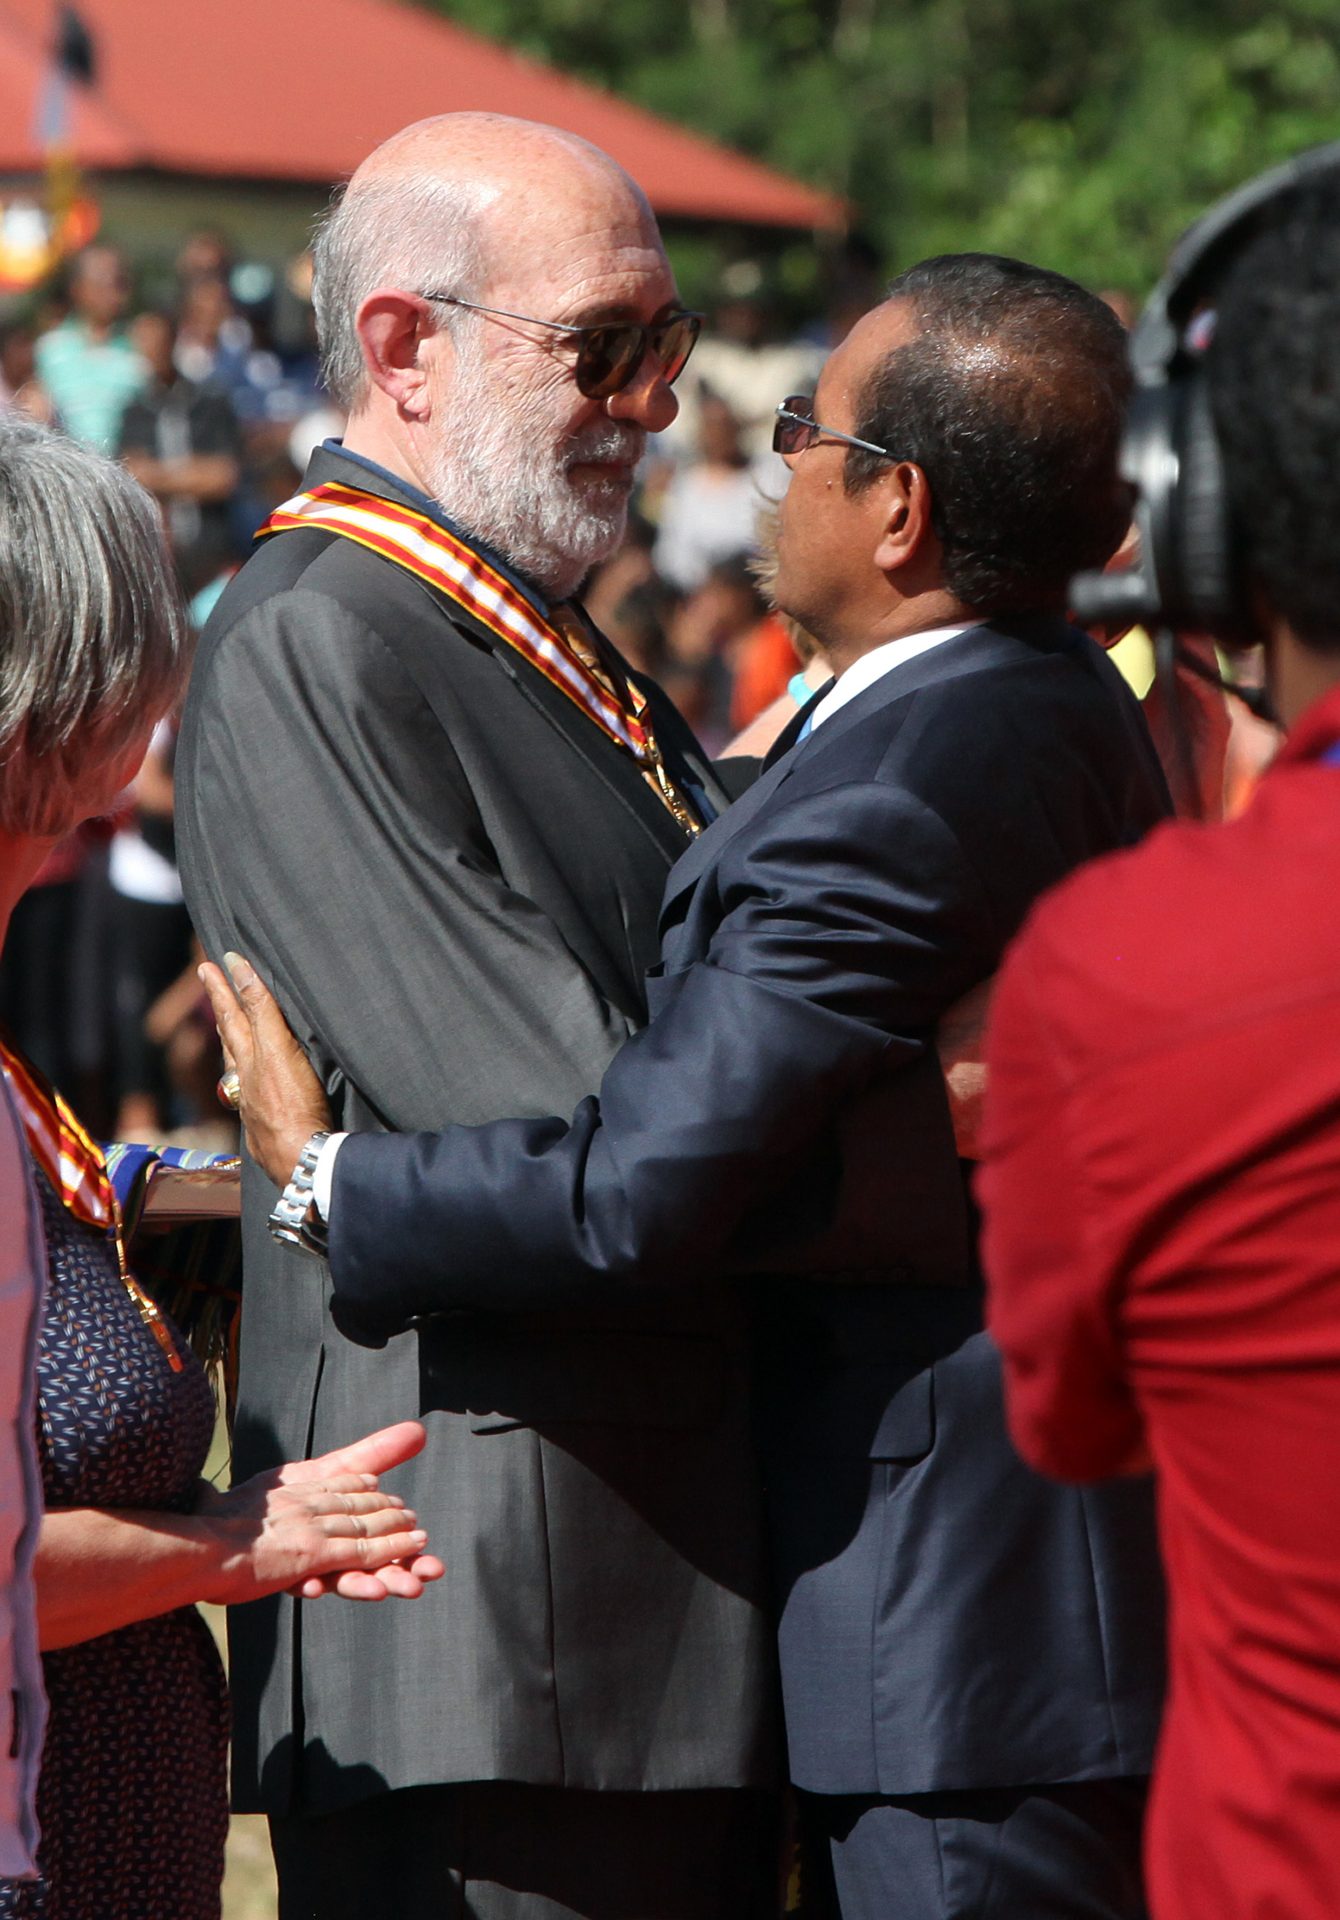 Presidente da República de Timor-Leste, Taur Matan Ruak (D), abraça Adelino Gomes (E), durante a cerimónia de condecoração de vários estrangeiros pelo seu contributo e apoio à luta de autodeterminação de Timor-Leste, durante as comemorações do 13.º aniversário da restauração da independência timorense, em Maliana, Timor-Leste, 20 de maio de 2015. ANTÓNIO SAMPAIO/LUSA